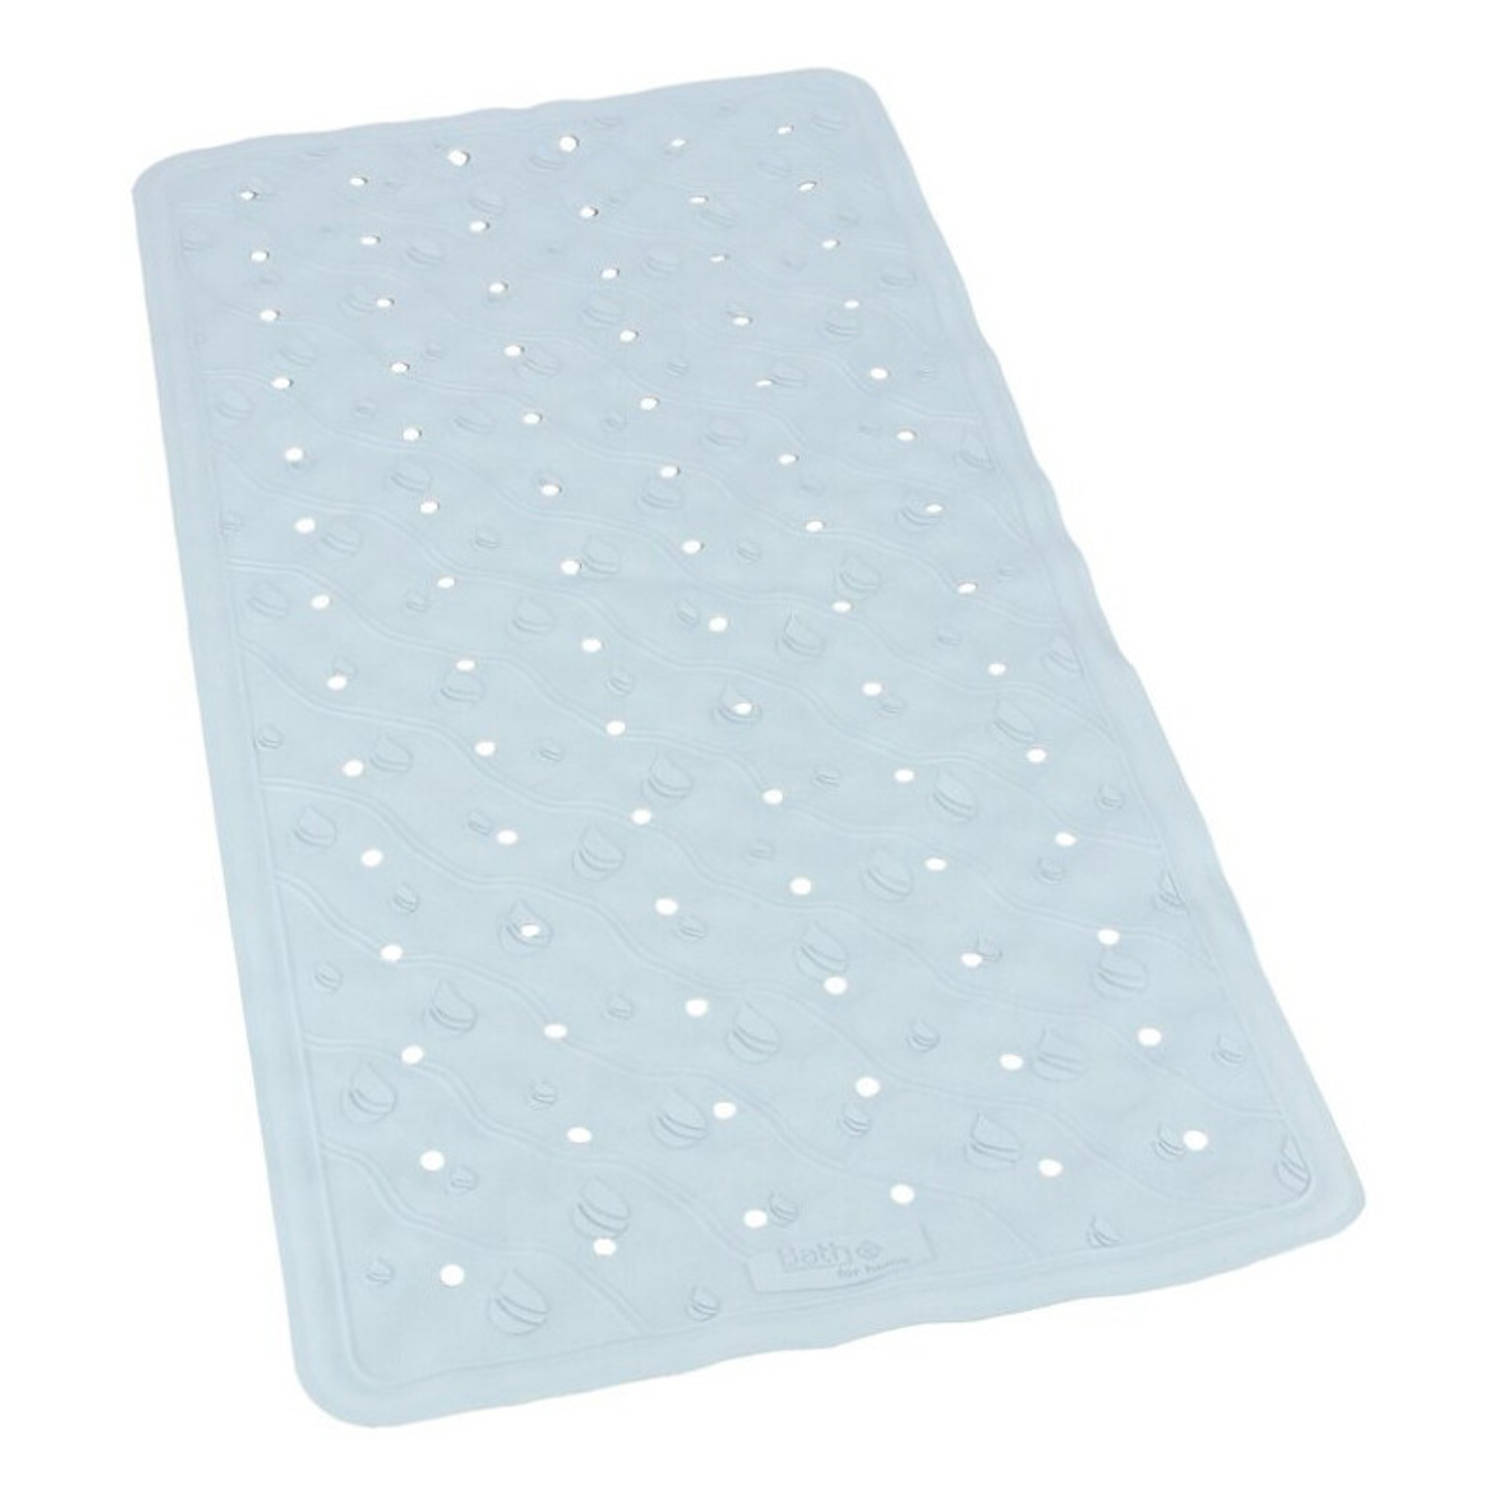 Lichtblauwe Anti-slip Badmat 36 X 76 Cm Rechthoekig Badkuip Mat Grip Mat Voor In Douche Of Bad